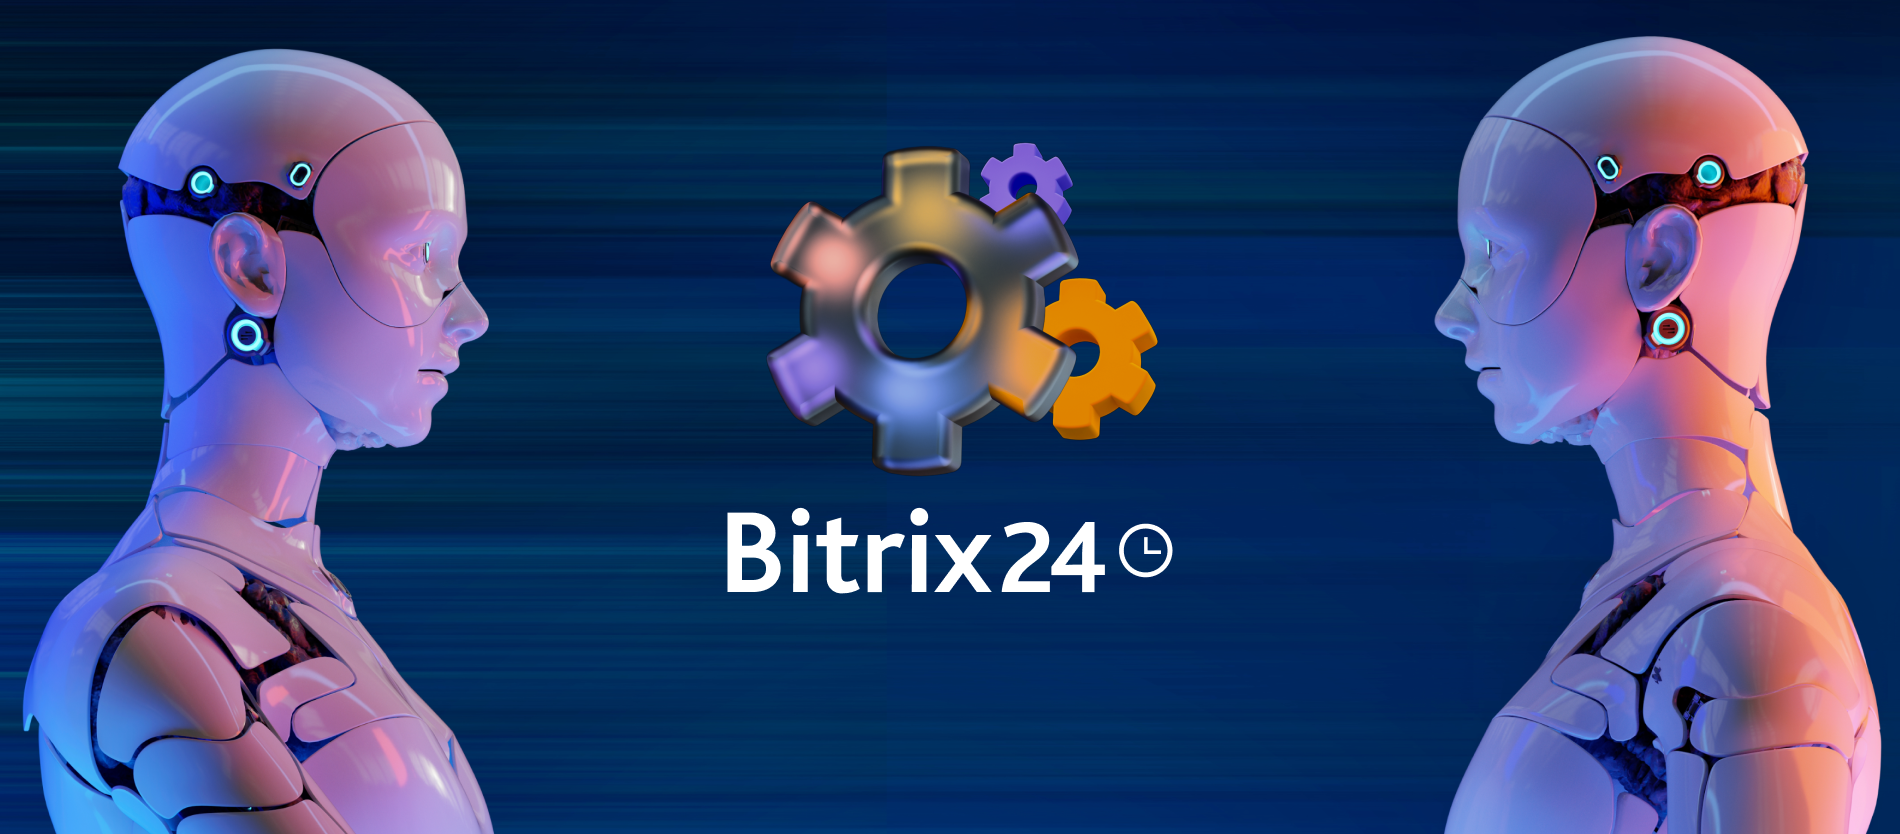 Impulsione a sua empresa com as Regras de Automação no CRM do Bitrix24